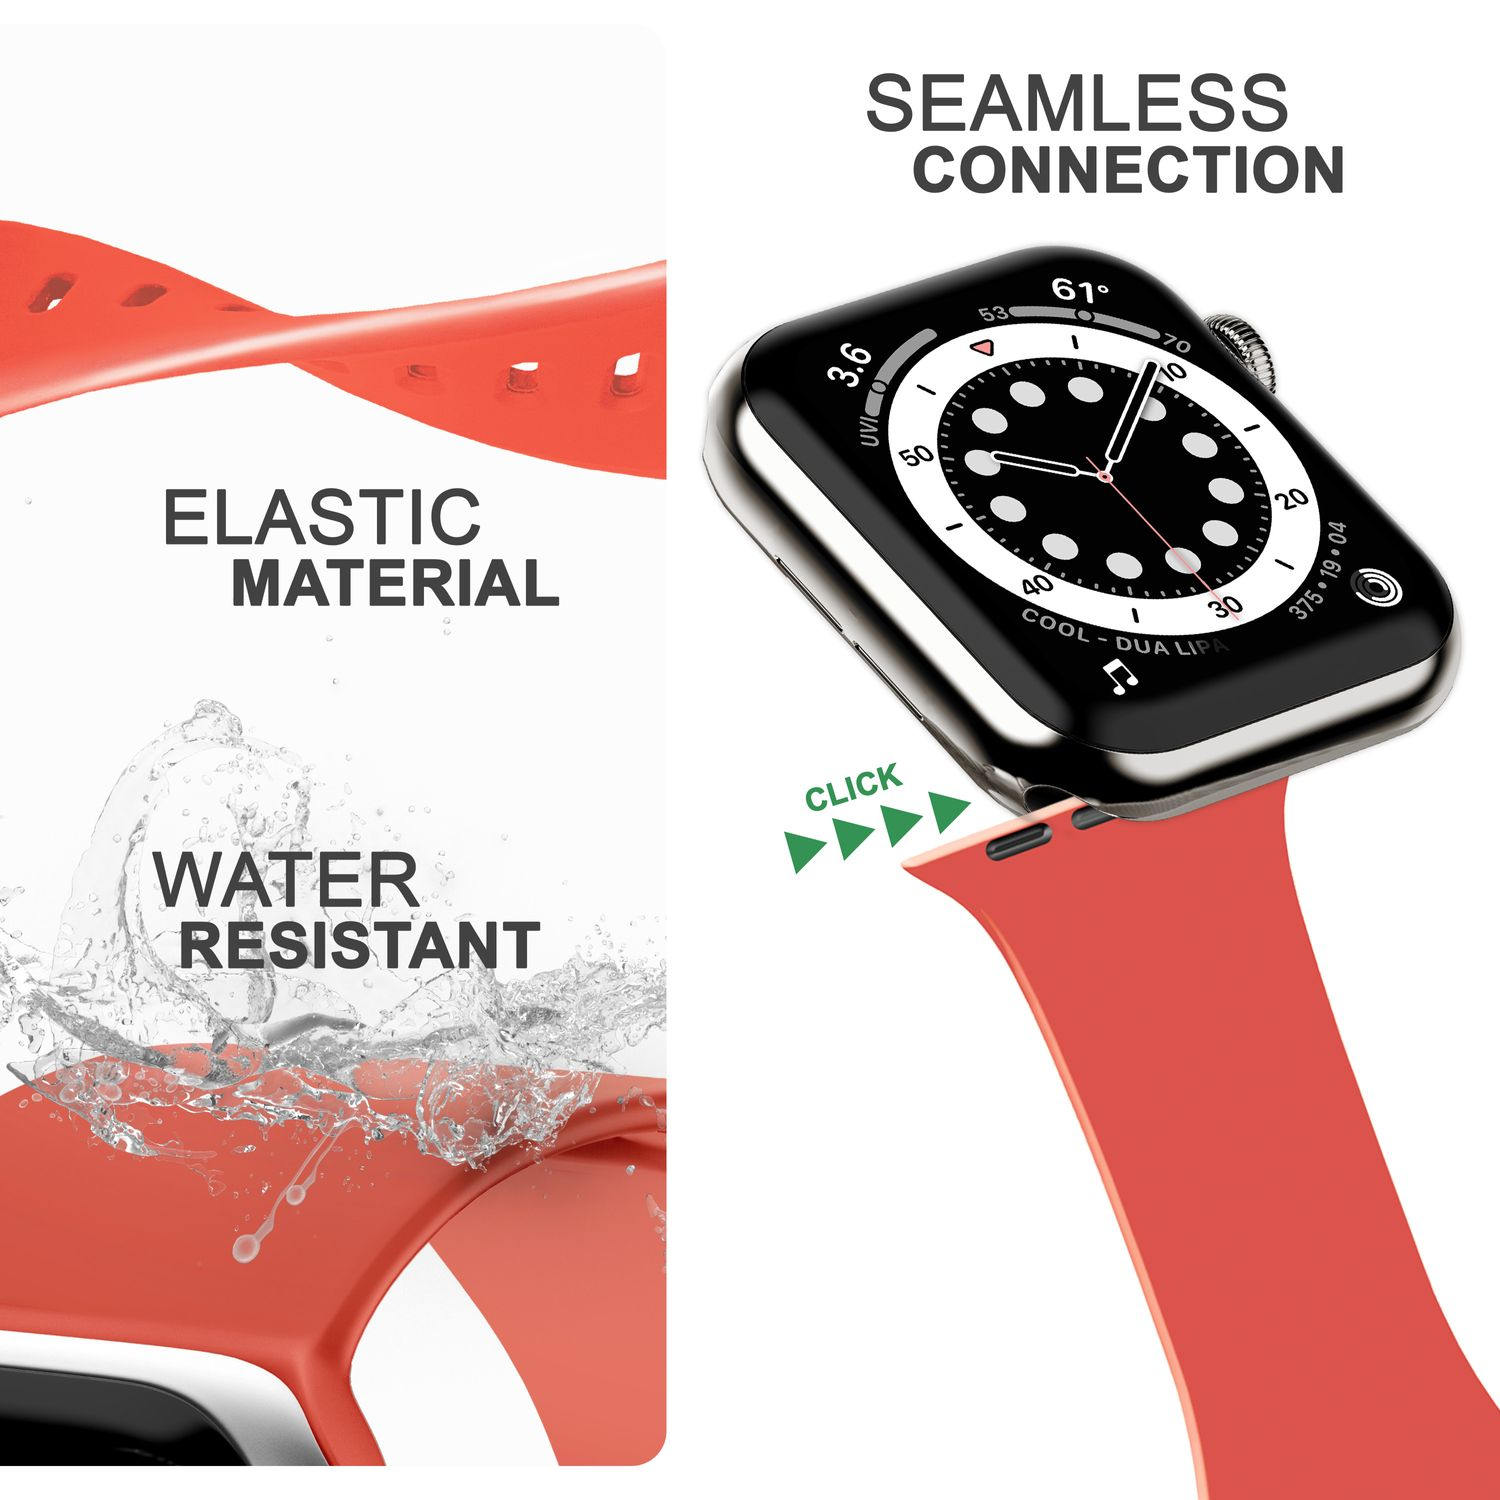 NALIA Smartwatch Watch Silikon Rot Apple 42mm/44mm/45mm/49mm, Apple, Pastell Armband, Ersatzarmband